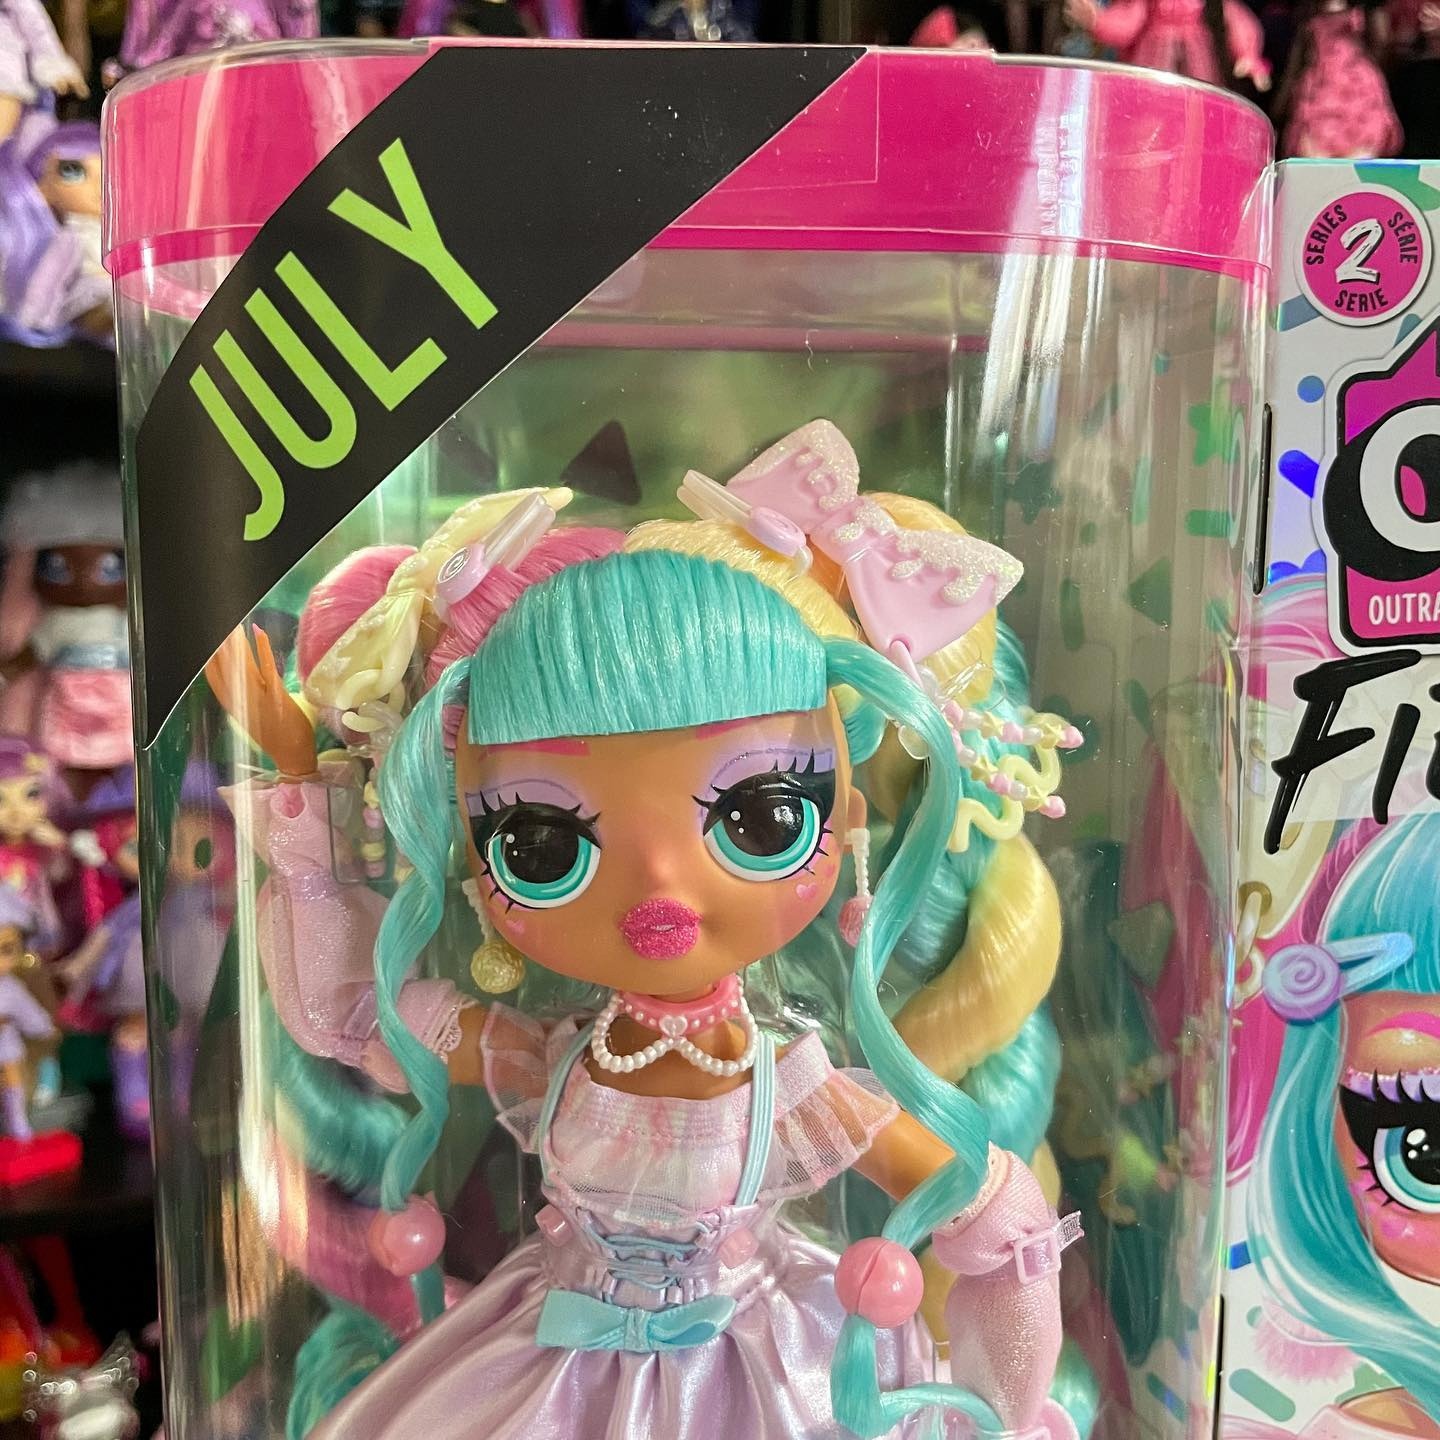 Lol surprise omg fierce dolls coming in July : r/Dolls